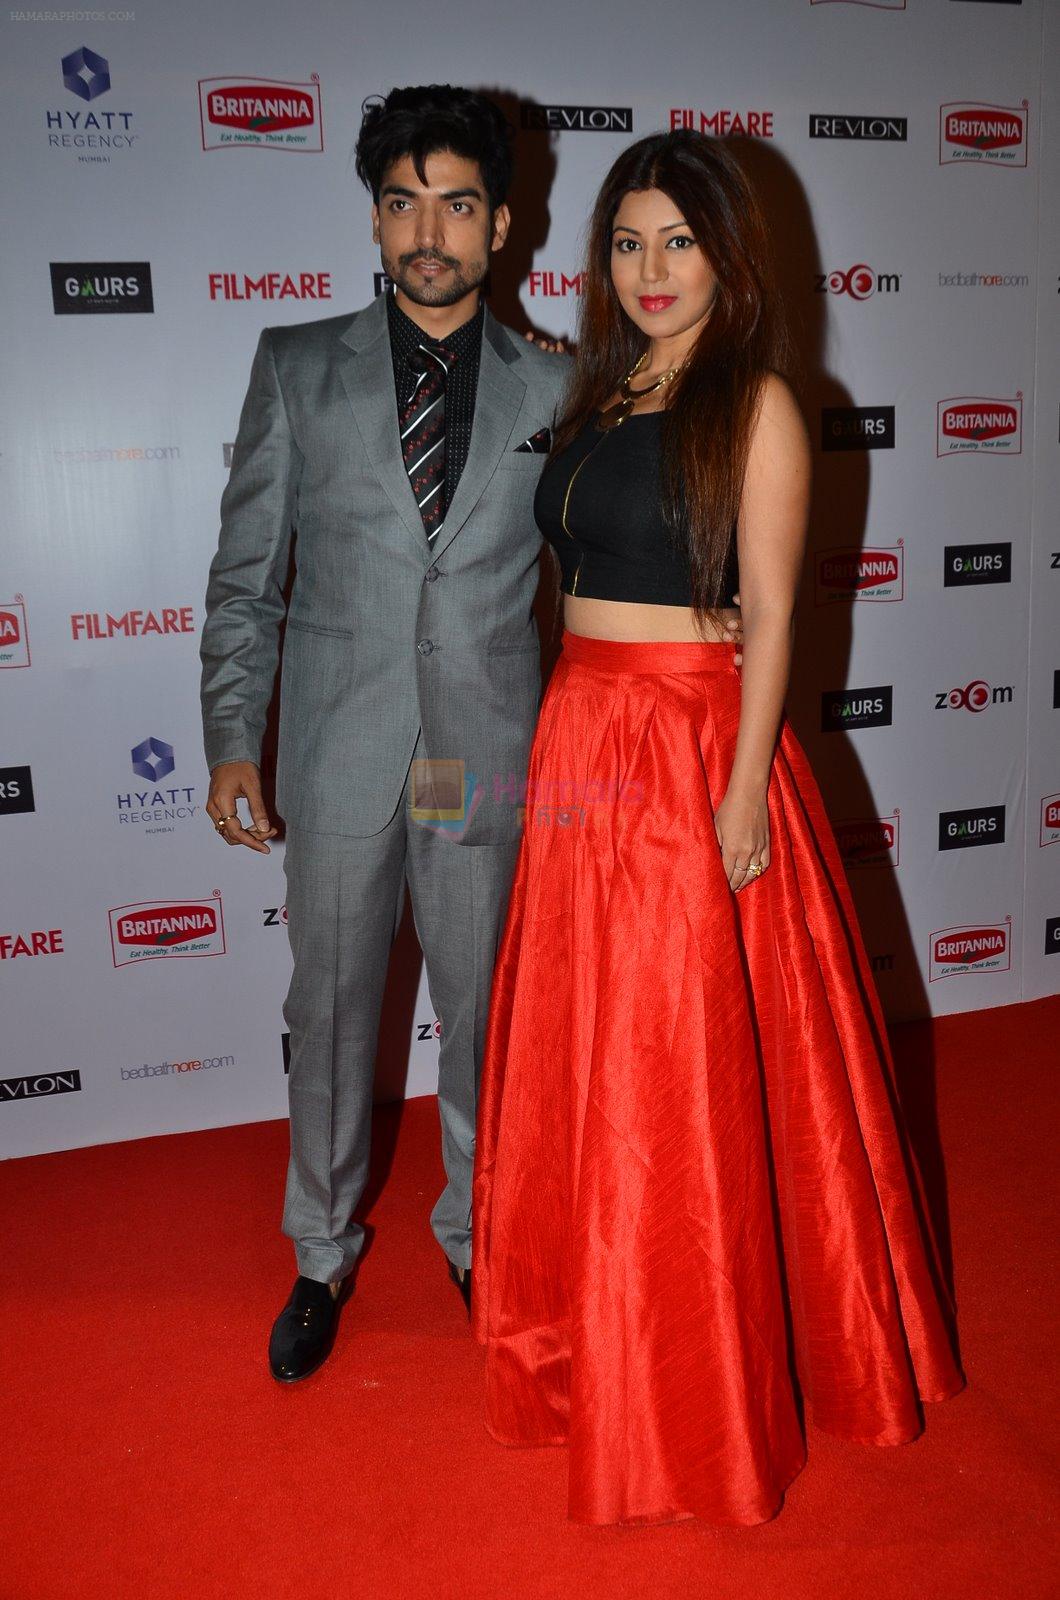 Gurmeet Chaudhary, Debina Bonerjee at Filmfare Nominations bash in Hyatt Regency, Mumbai on 22nd Jan 2015